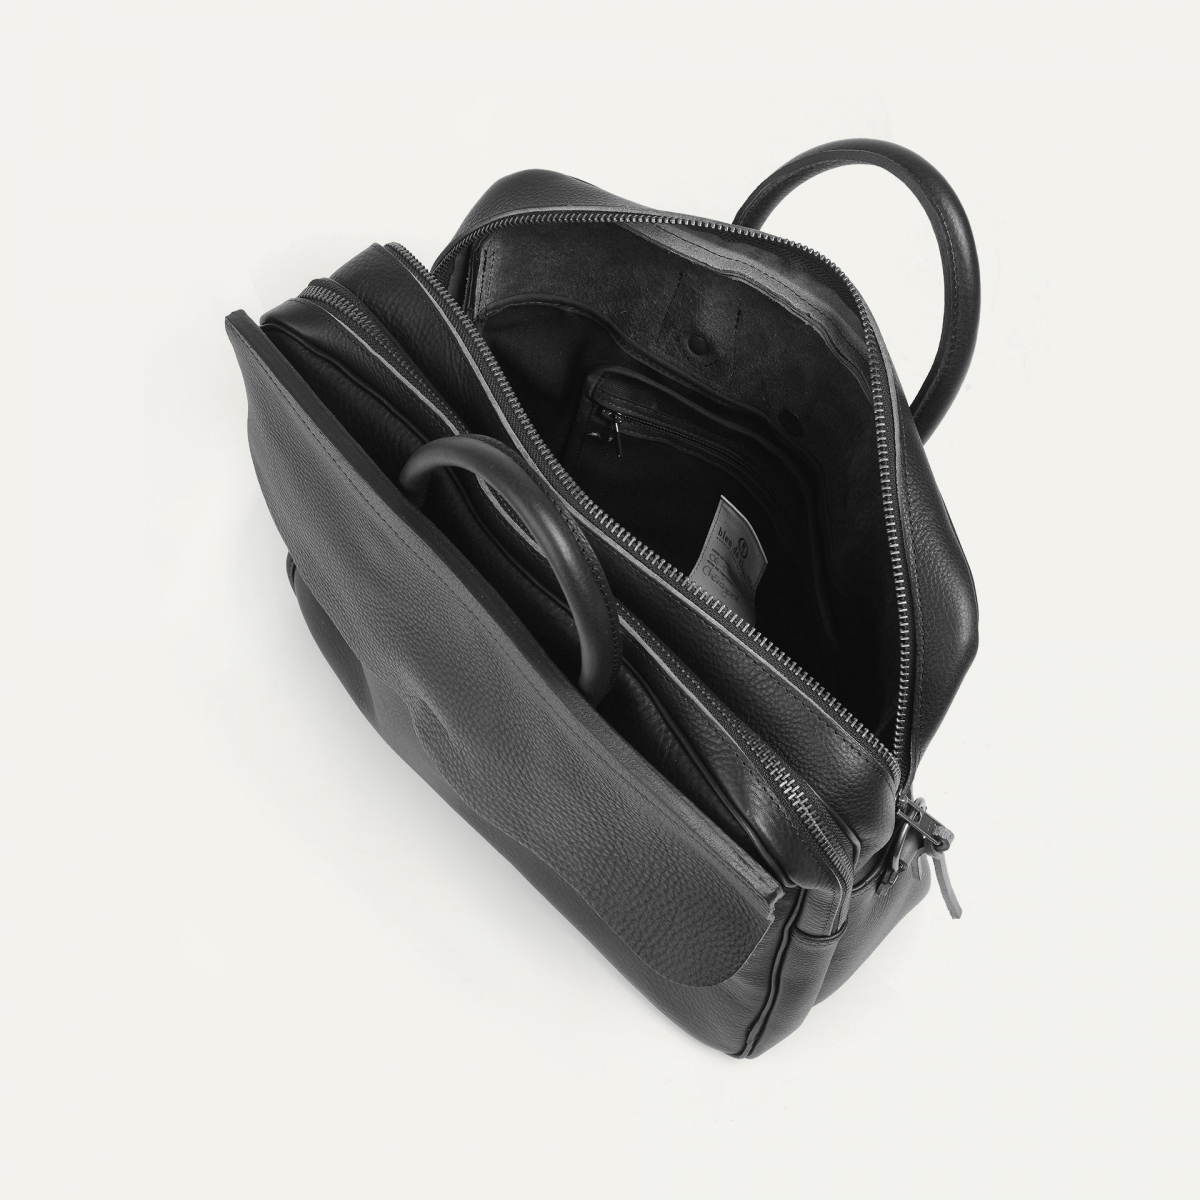 ZEPPO Laptop bag for Men - Brown I Men's Leather bag I Made in France